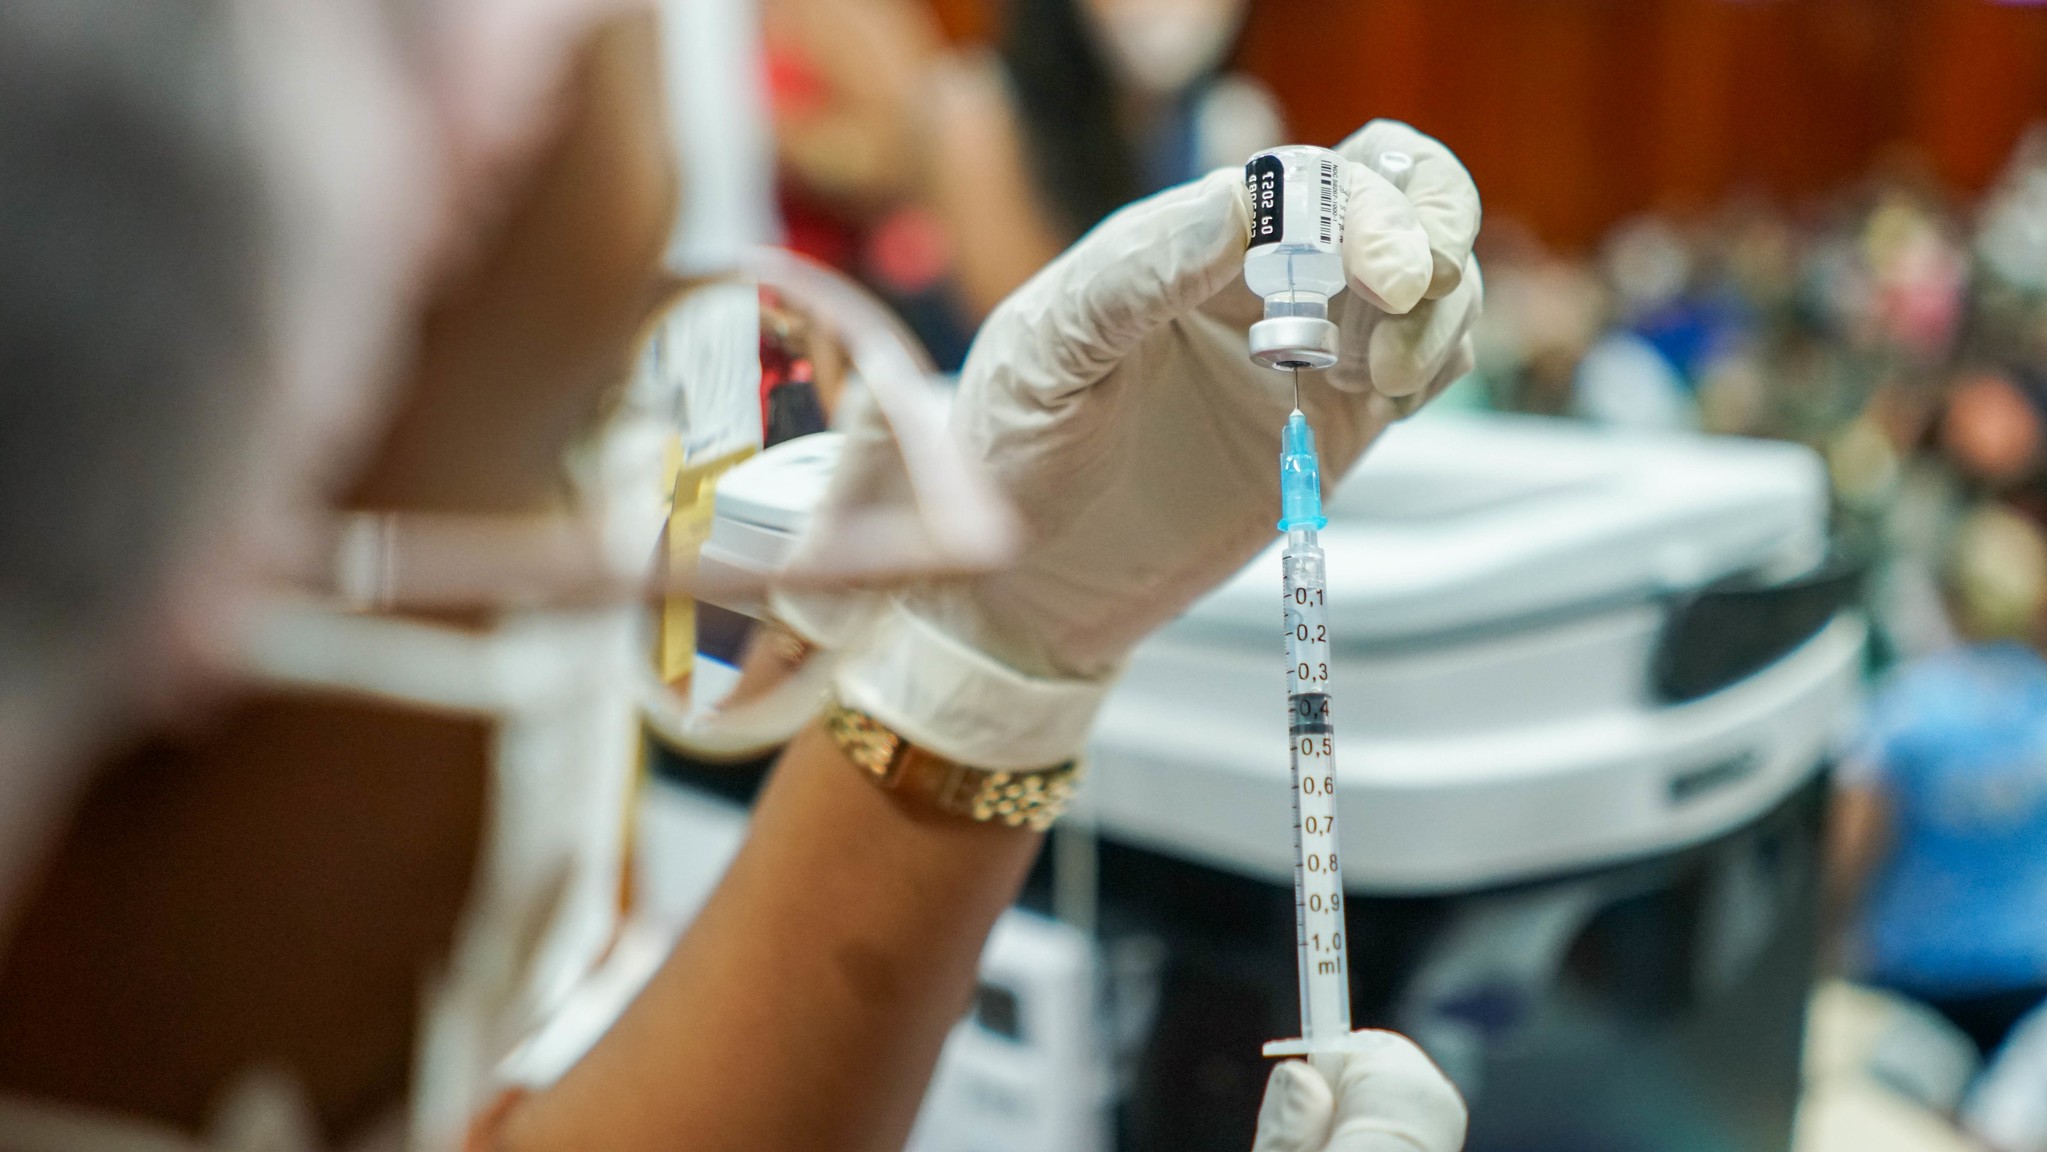 Suspensa a vacinação contra Covid-19 neste fim de semana de eleições em Macapá